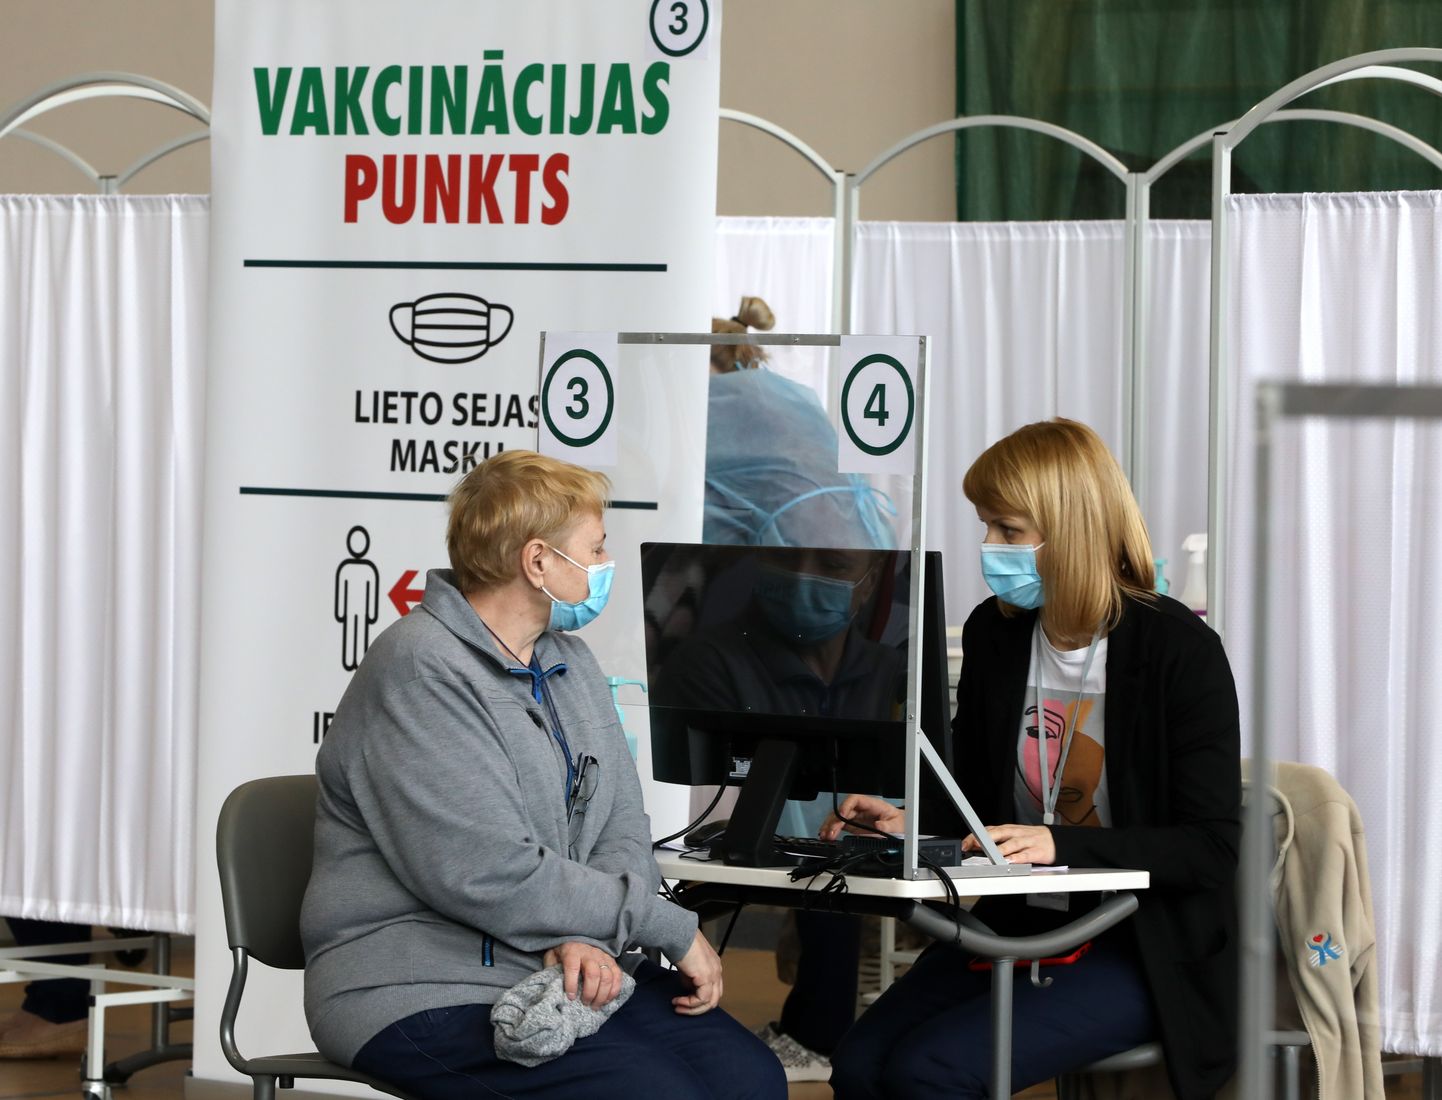 Ziemeļkurzemes reģionālā slimnīca sporta namā "Centrs" Ventspilī iekārtojusi Latvijā pirmo liela mēroga vakcinācijas pret Covid-19 punktu, kurš vienu dienu darbojas izmēģinājuma režīmā, kura laikā tiek testēta pacientu plūsma, vakcinācijas procesa raita norise, epidemioloģisko prasību nodrošināšana un citas procesa detaļas.